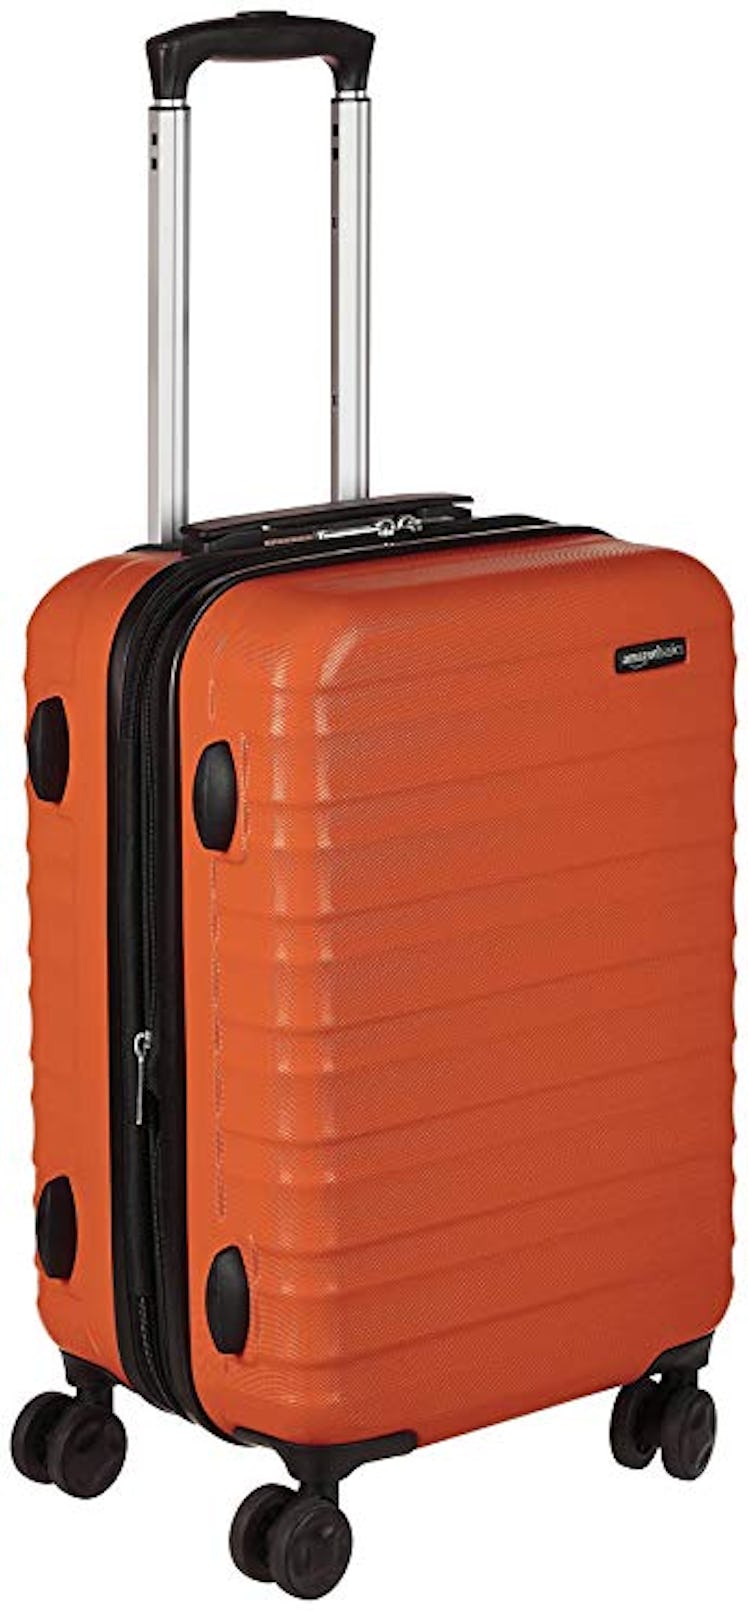 Amazon Basics Hardside Spinner Luggage